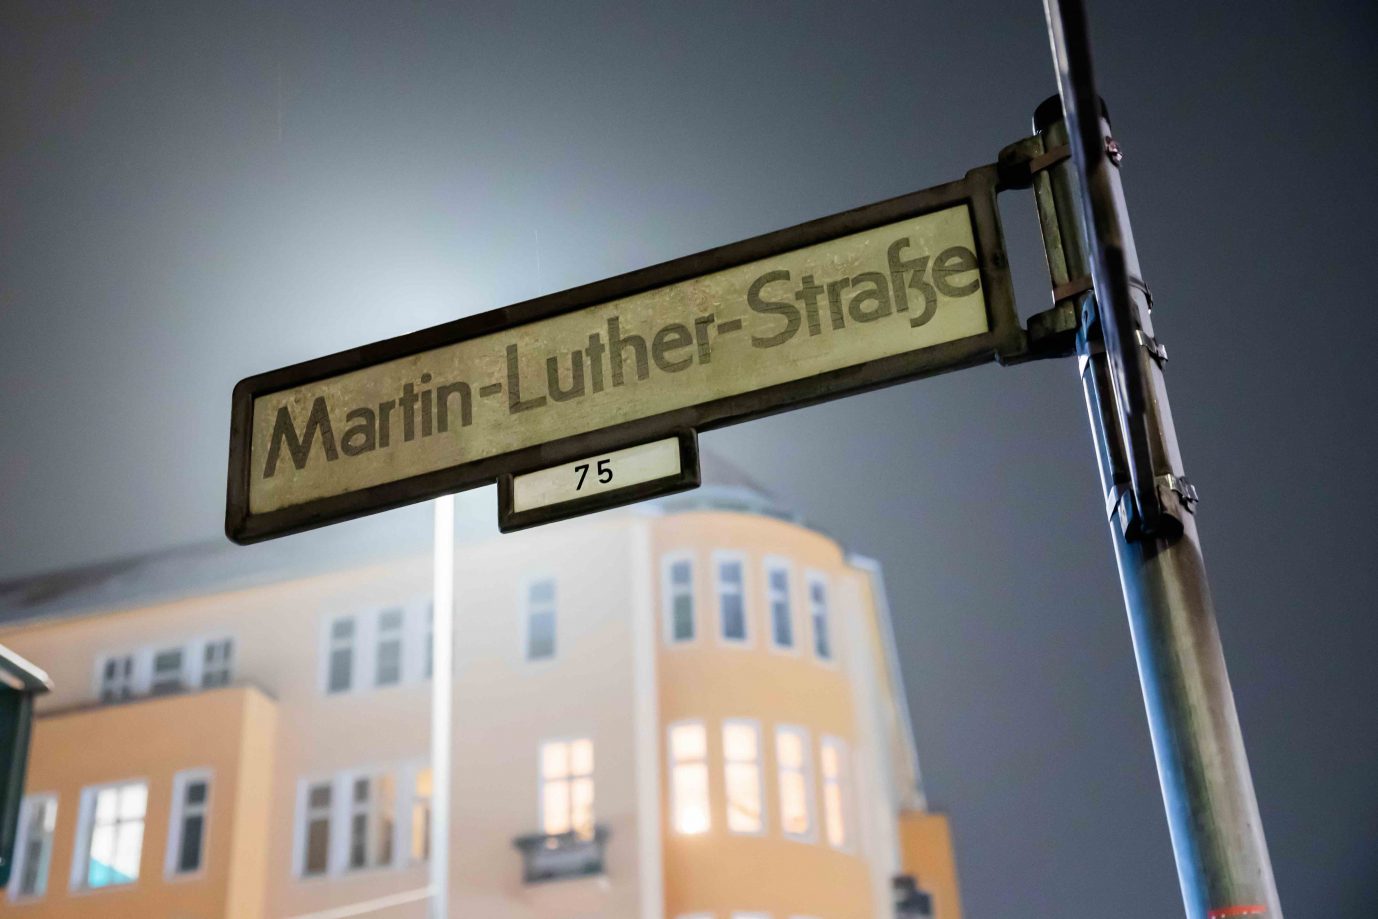 Auch die Martin-Luther-Straße in Berlin-Schöneberg soll umbenannt werden, weil der Reformator sich antisemitisch geäußert hat Foto: picture alliance/dpa | Christoph Soeder